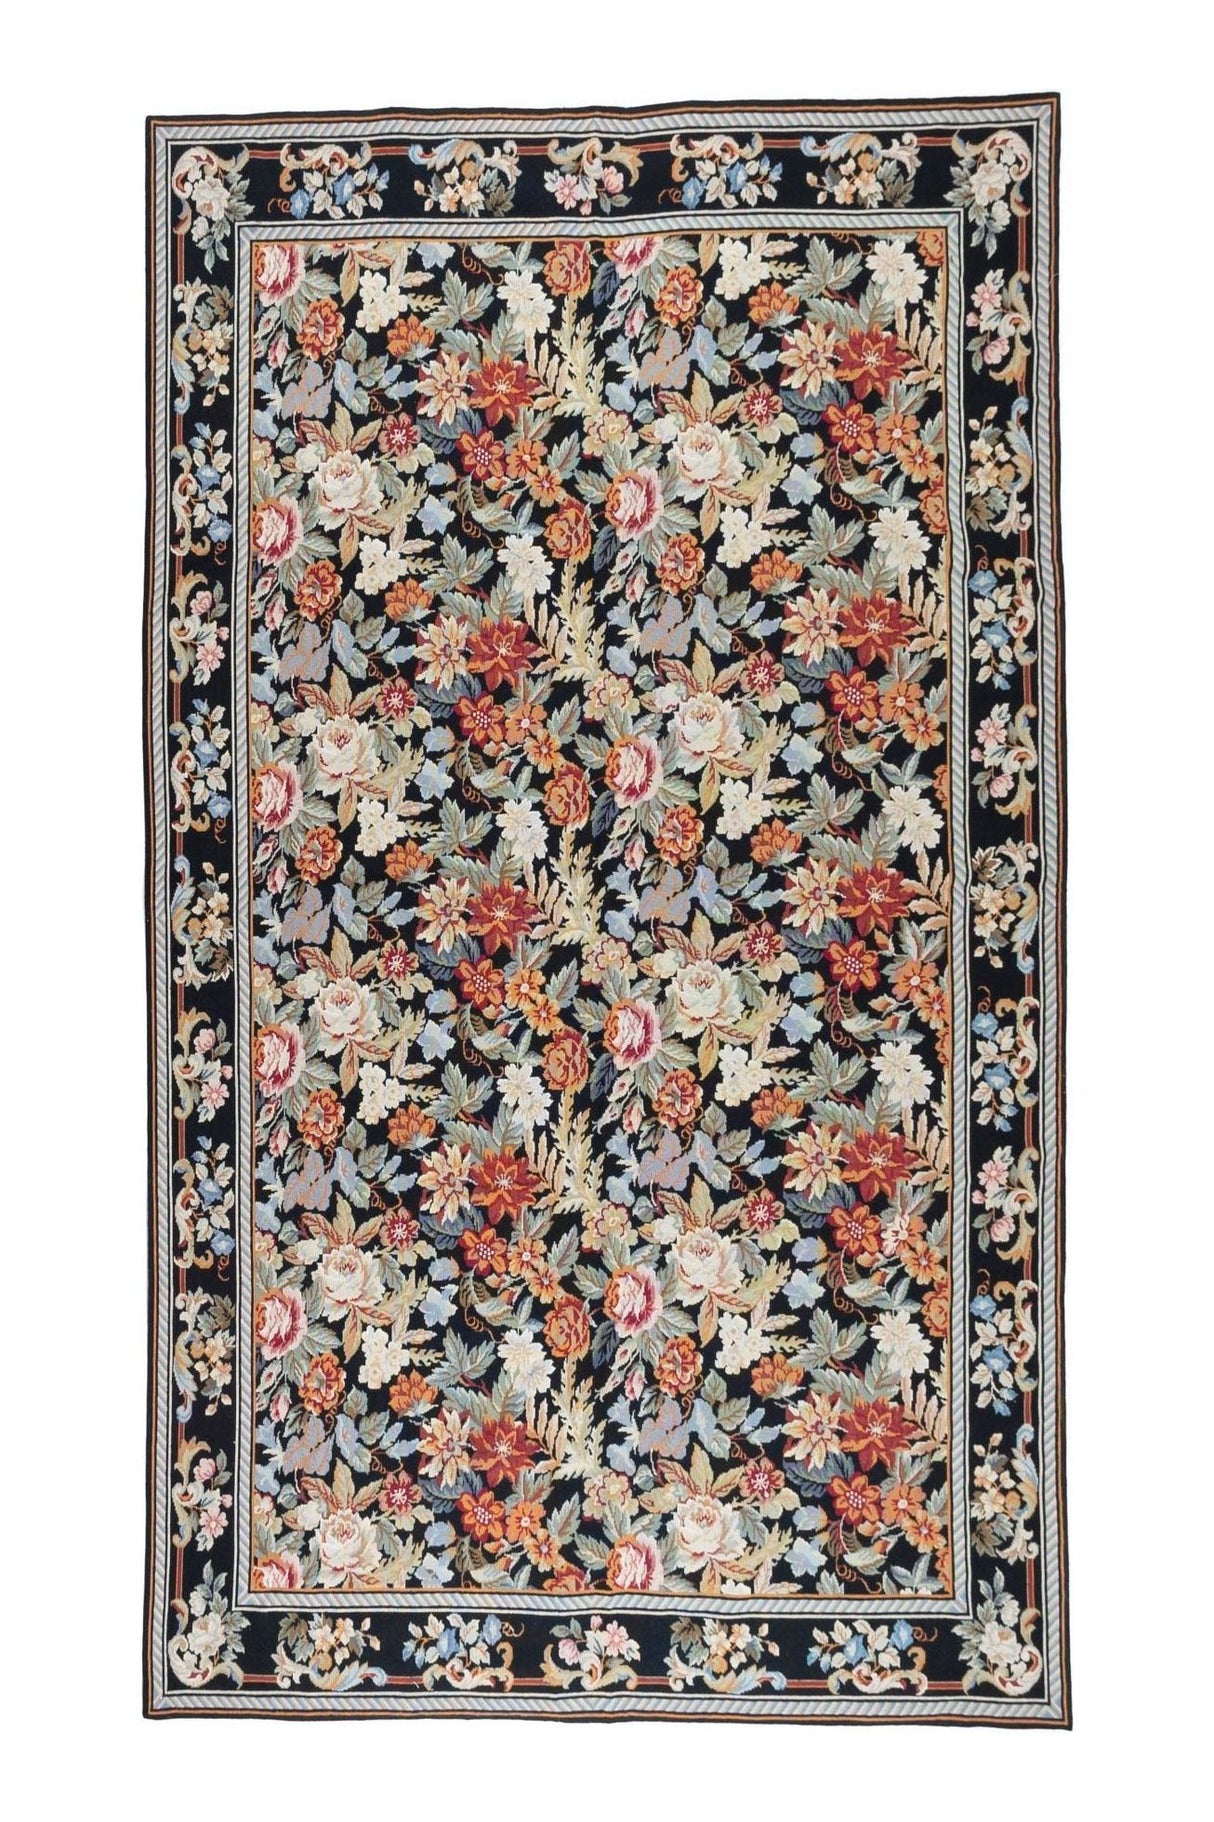 #Turkish_Carpets_Rugs# #Modern_Carpets# #Abrash_Carpets#Bahrain1195-173X274